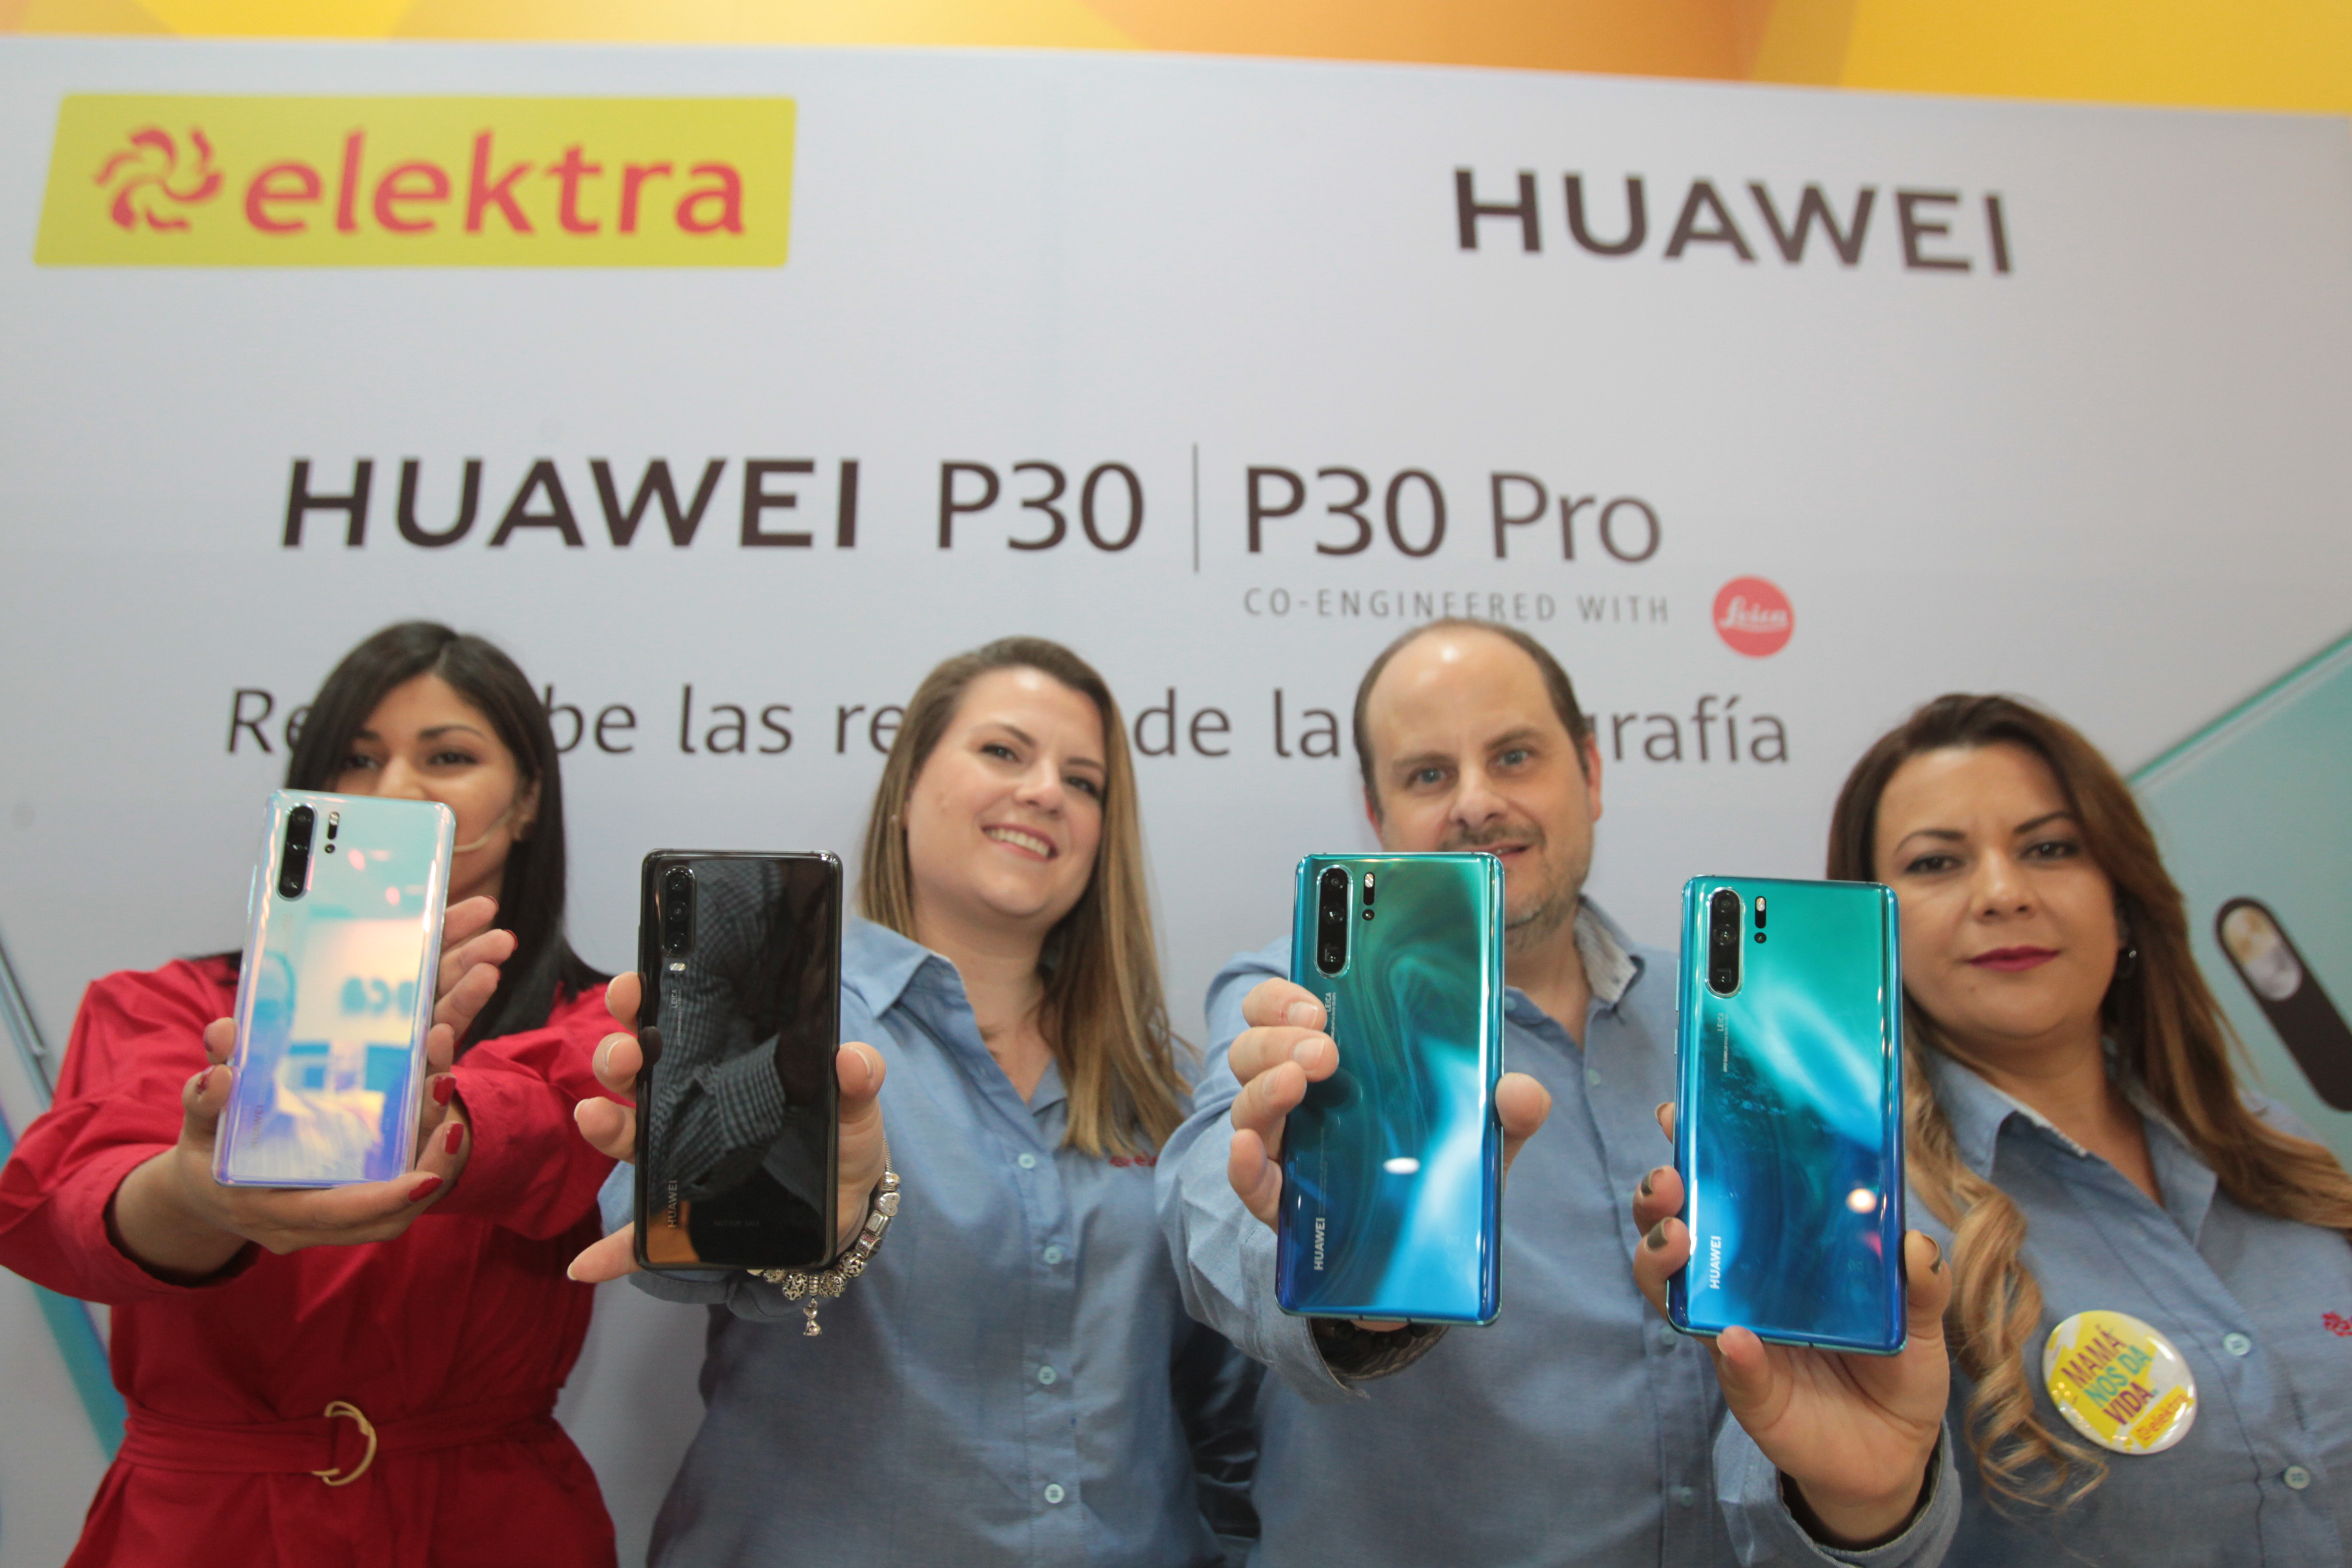 Ejecutivos de Huawei y de Elektra presentaron la nueva línea de celulares P30